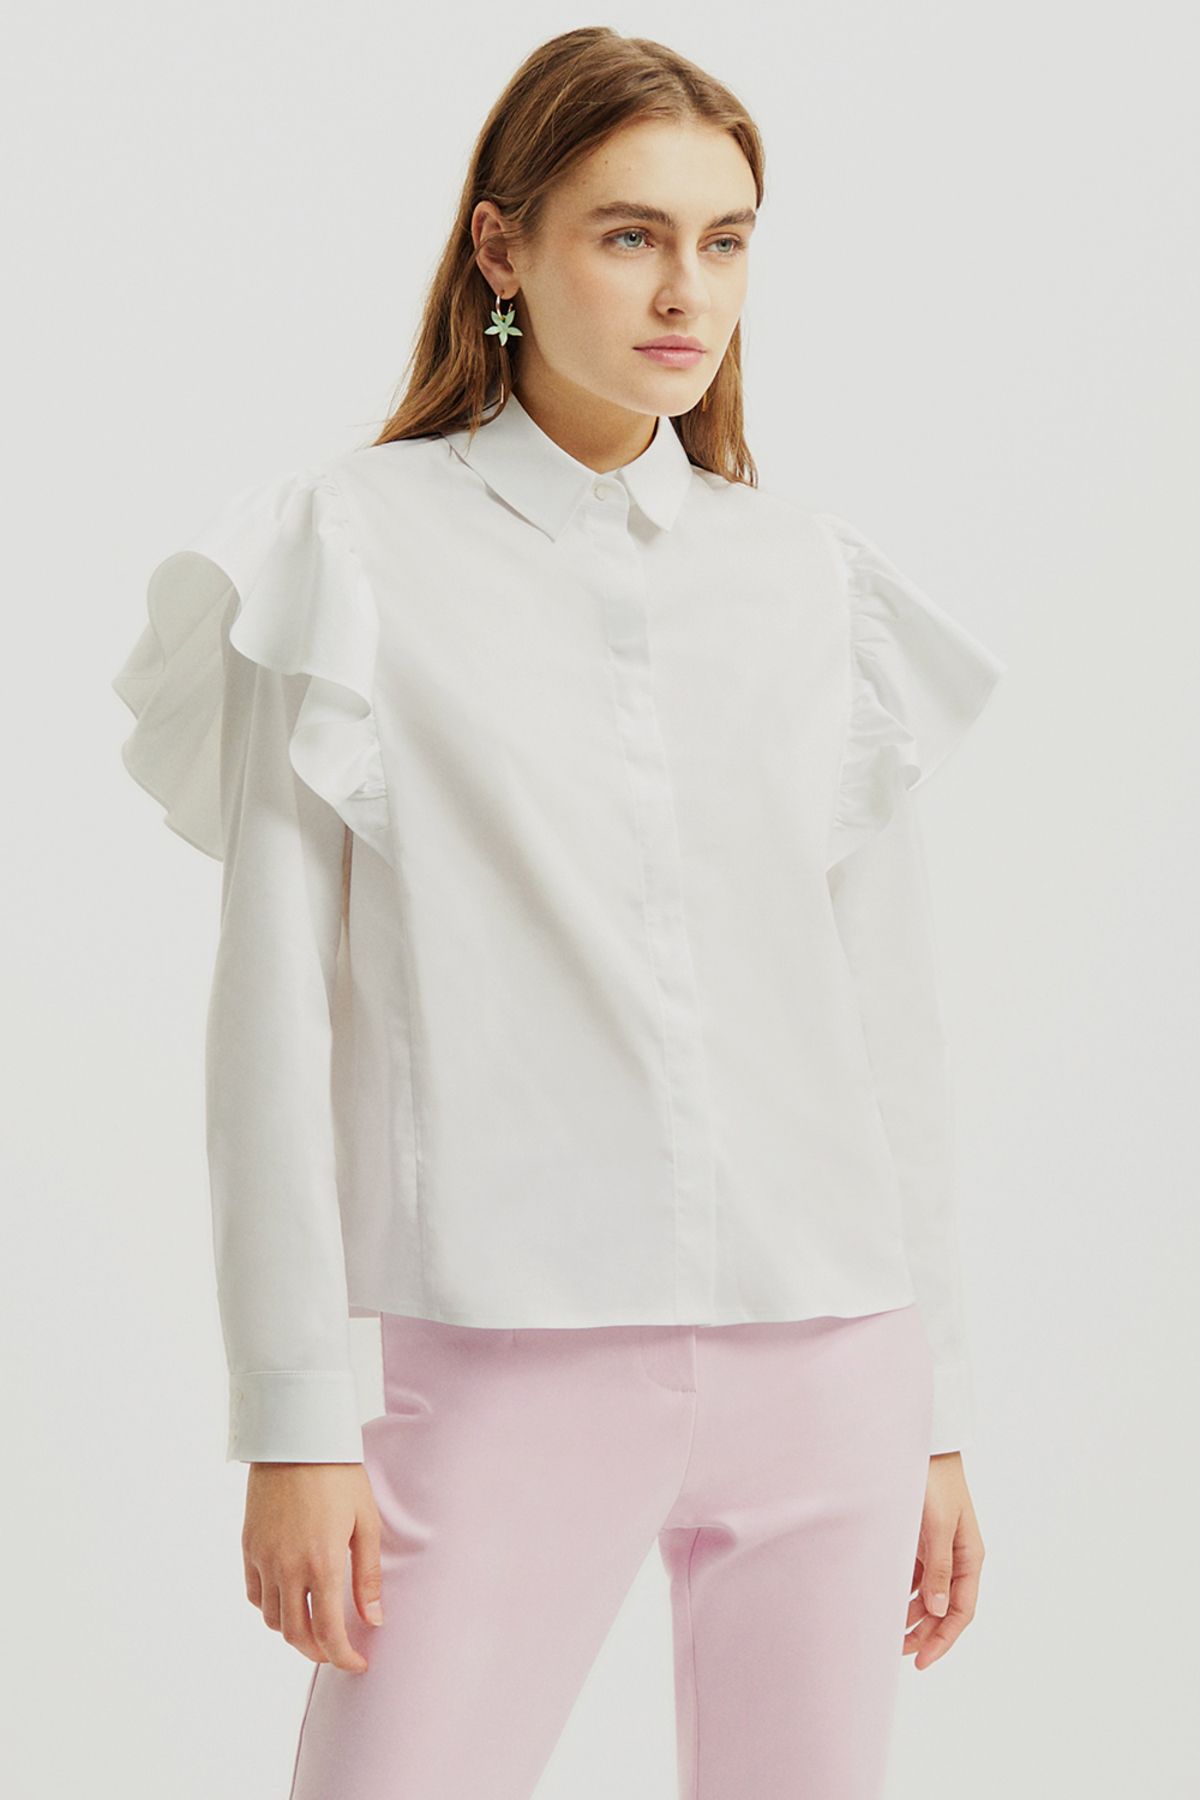 Perspective Armin Regular Fit Gömlek Yaka Kısa Boy Beyaz Renk Kadın Gömlek